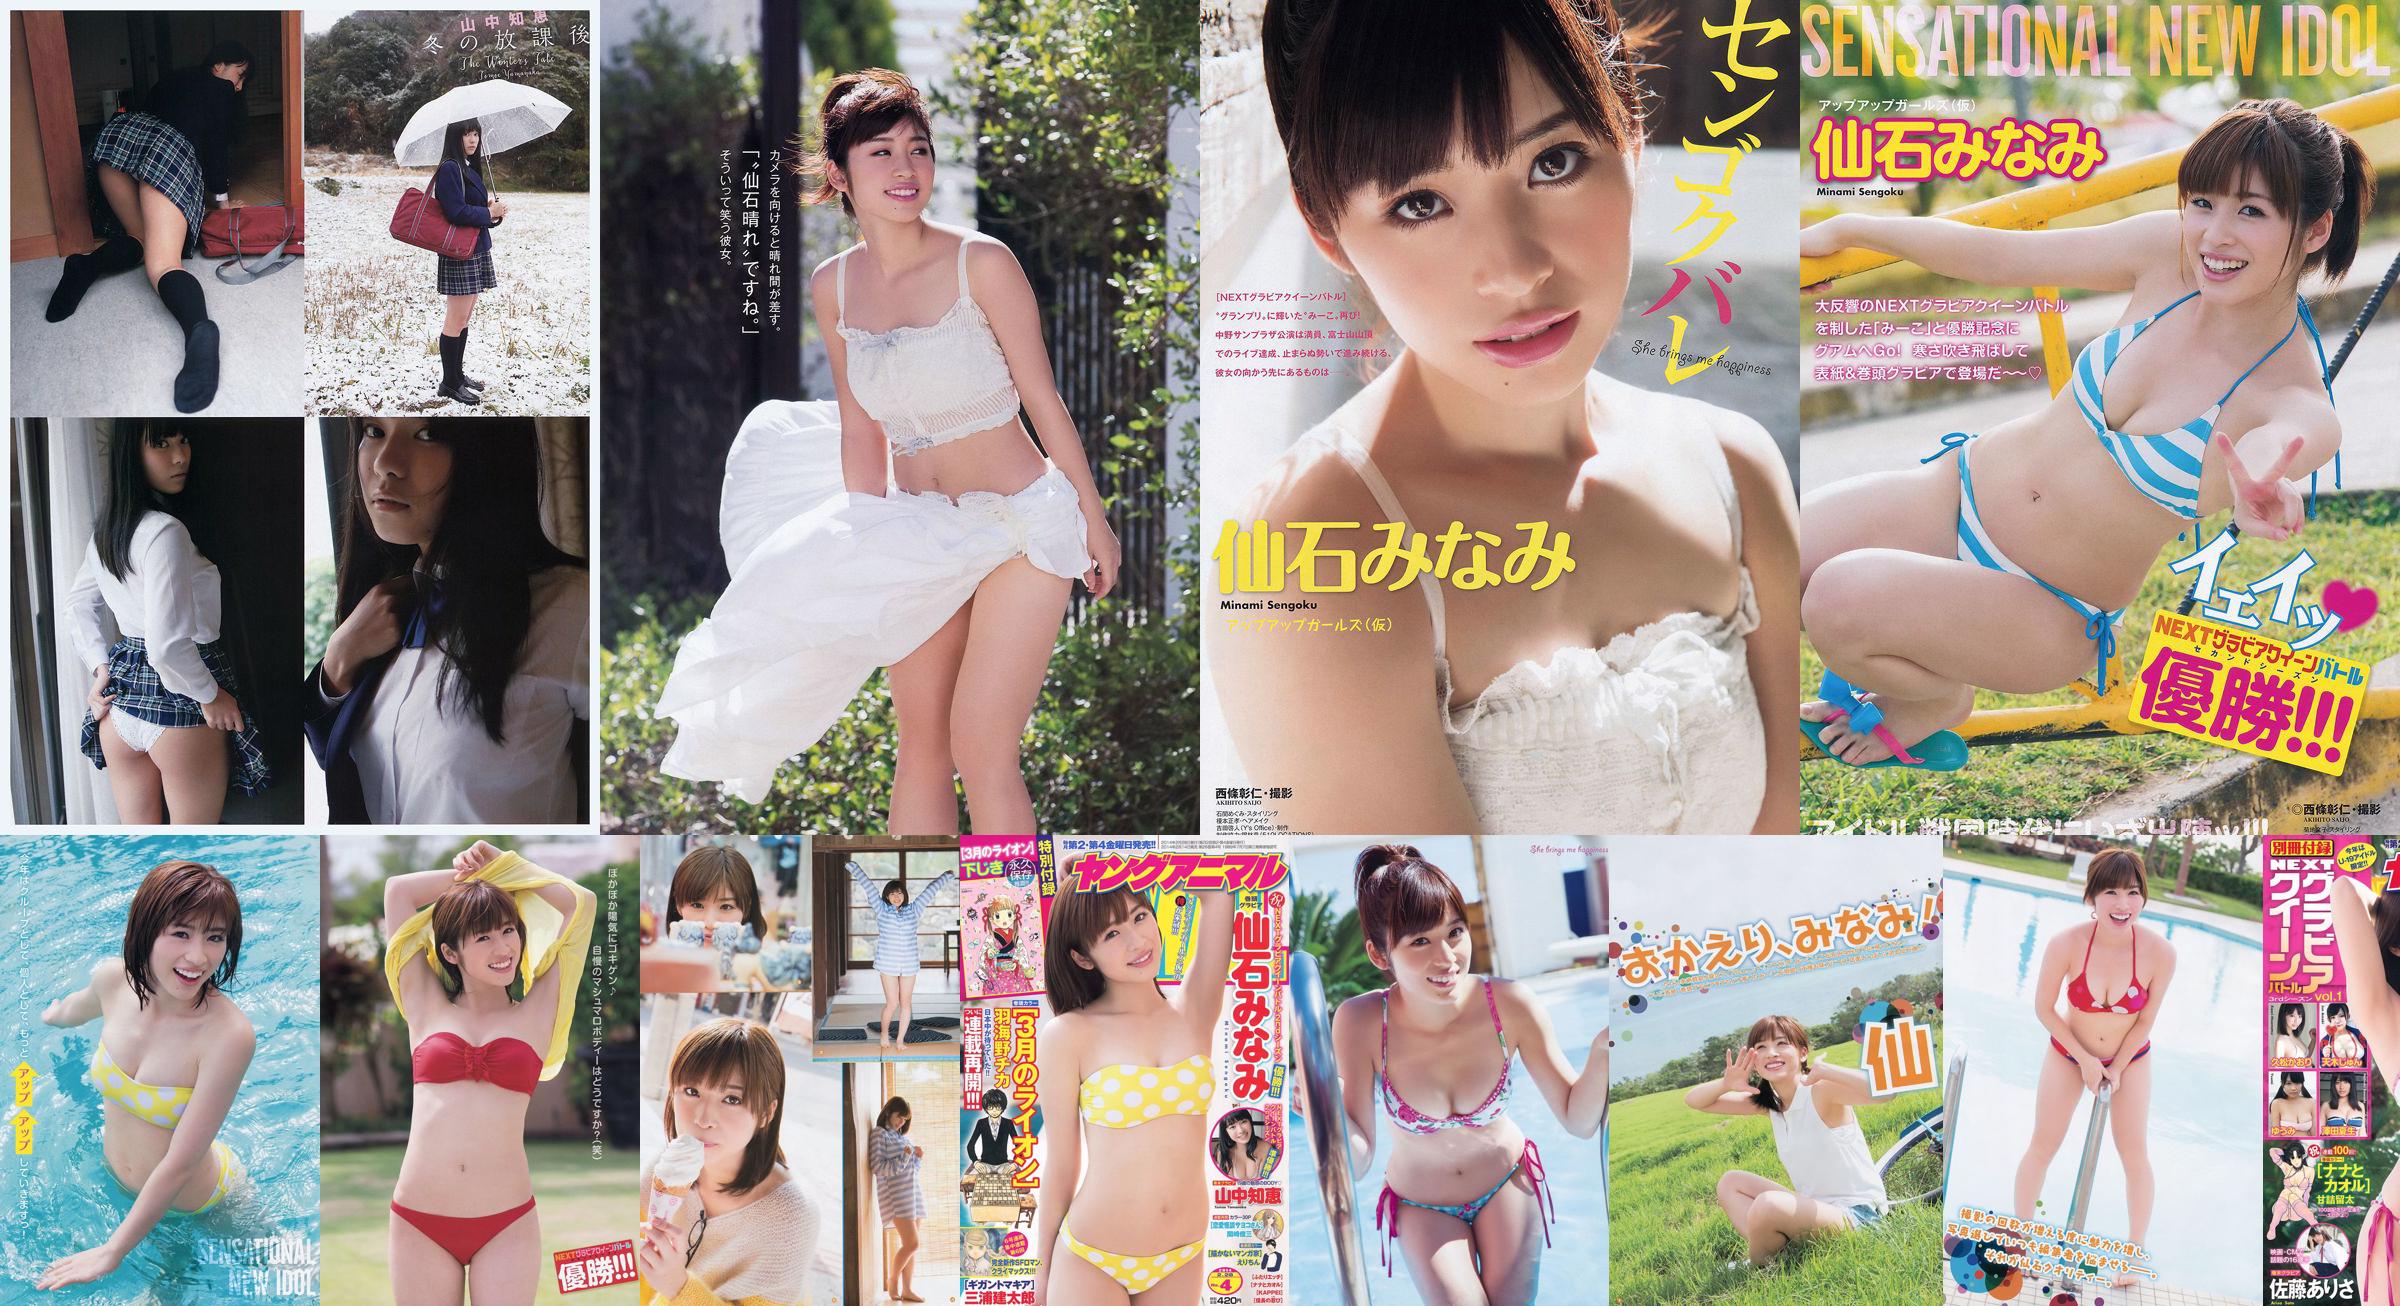 [Young Gangan] Senshi みなみ Yamanaka Tomoji Shiraishi アヤ Kataoka Saya 2014 No.01 Photo Magazine No.5a4f22 Pagina 6